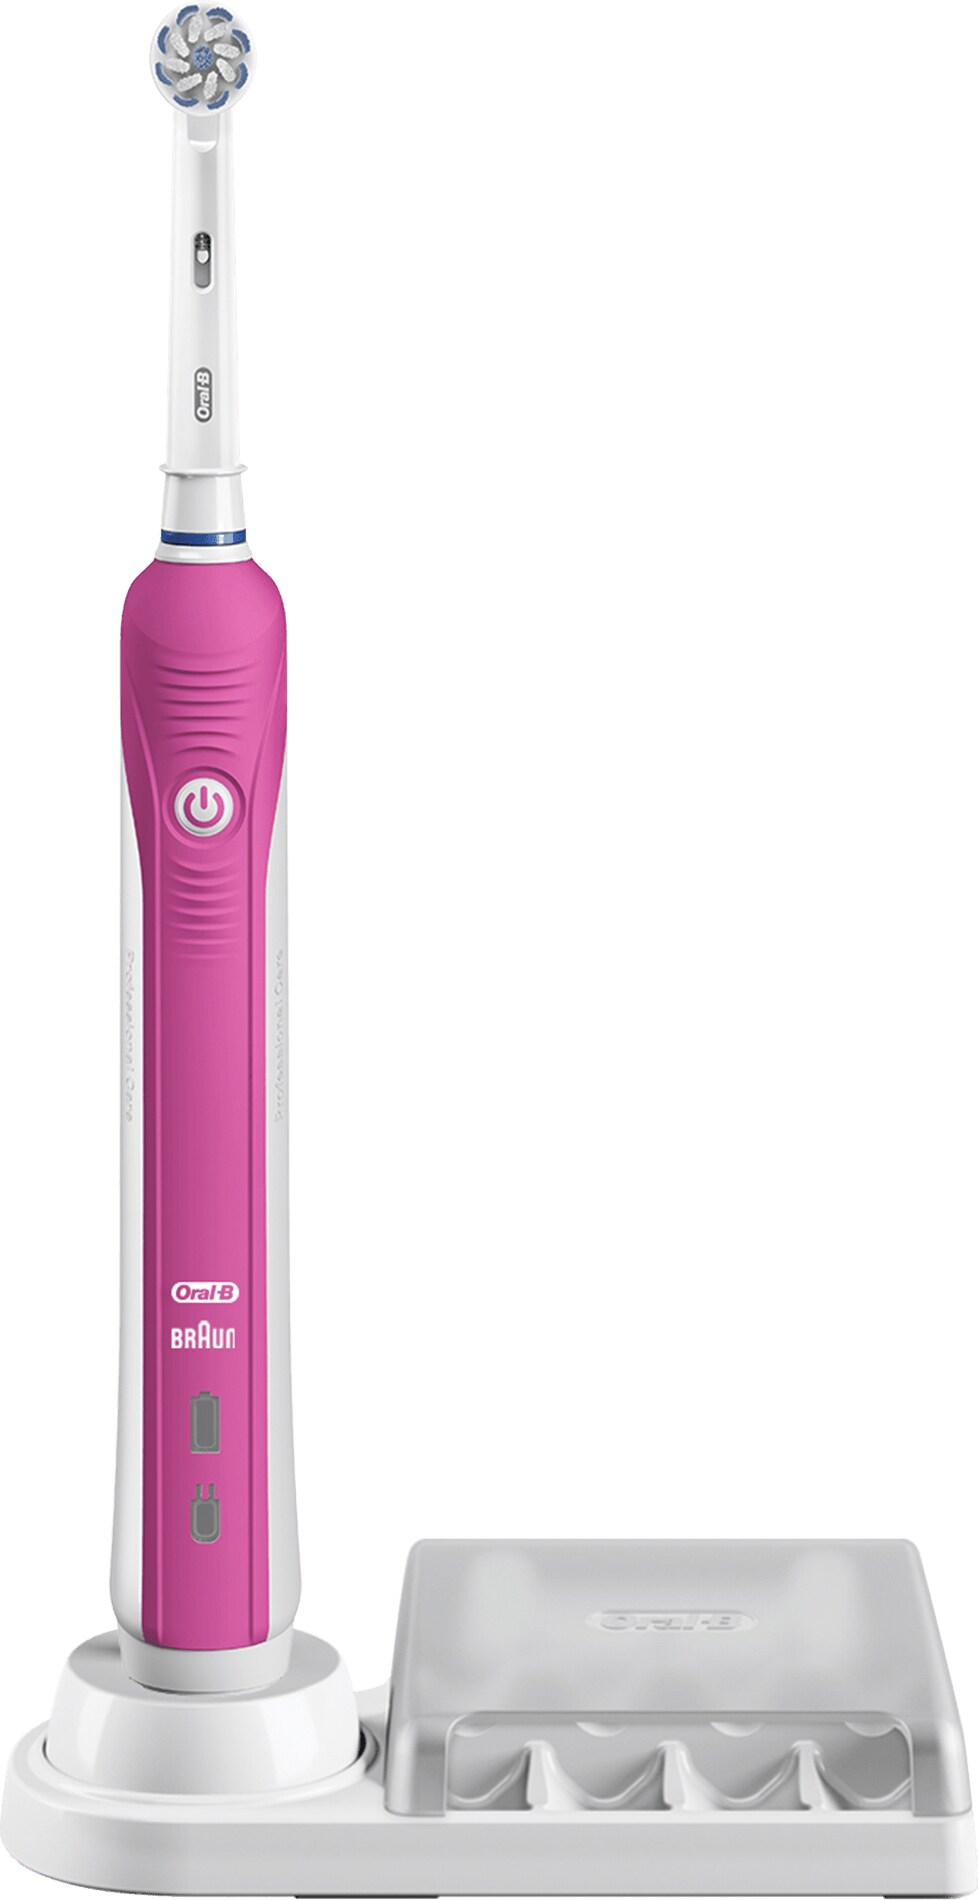 Oral-B Pro-2 2400N elektrisk tandbørste (pink) | Elgiganten